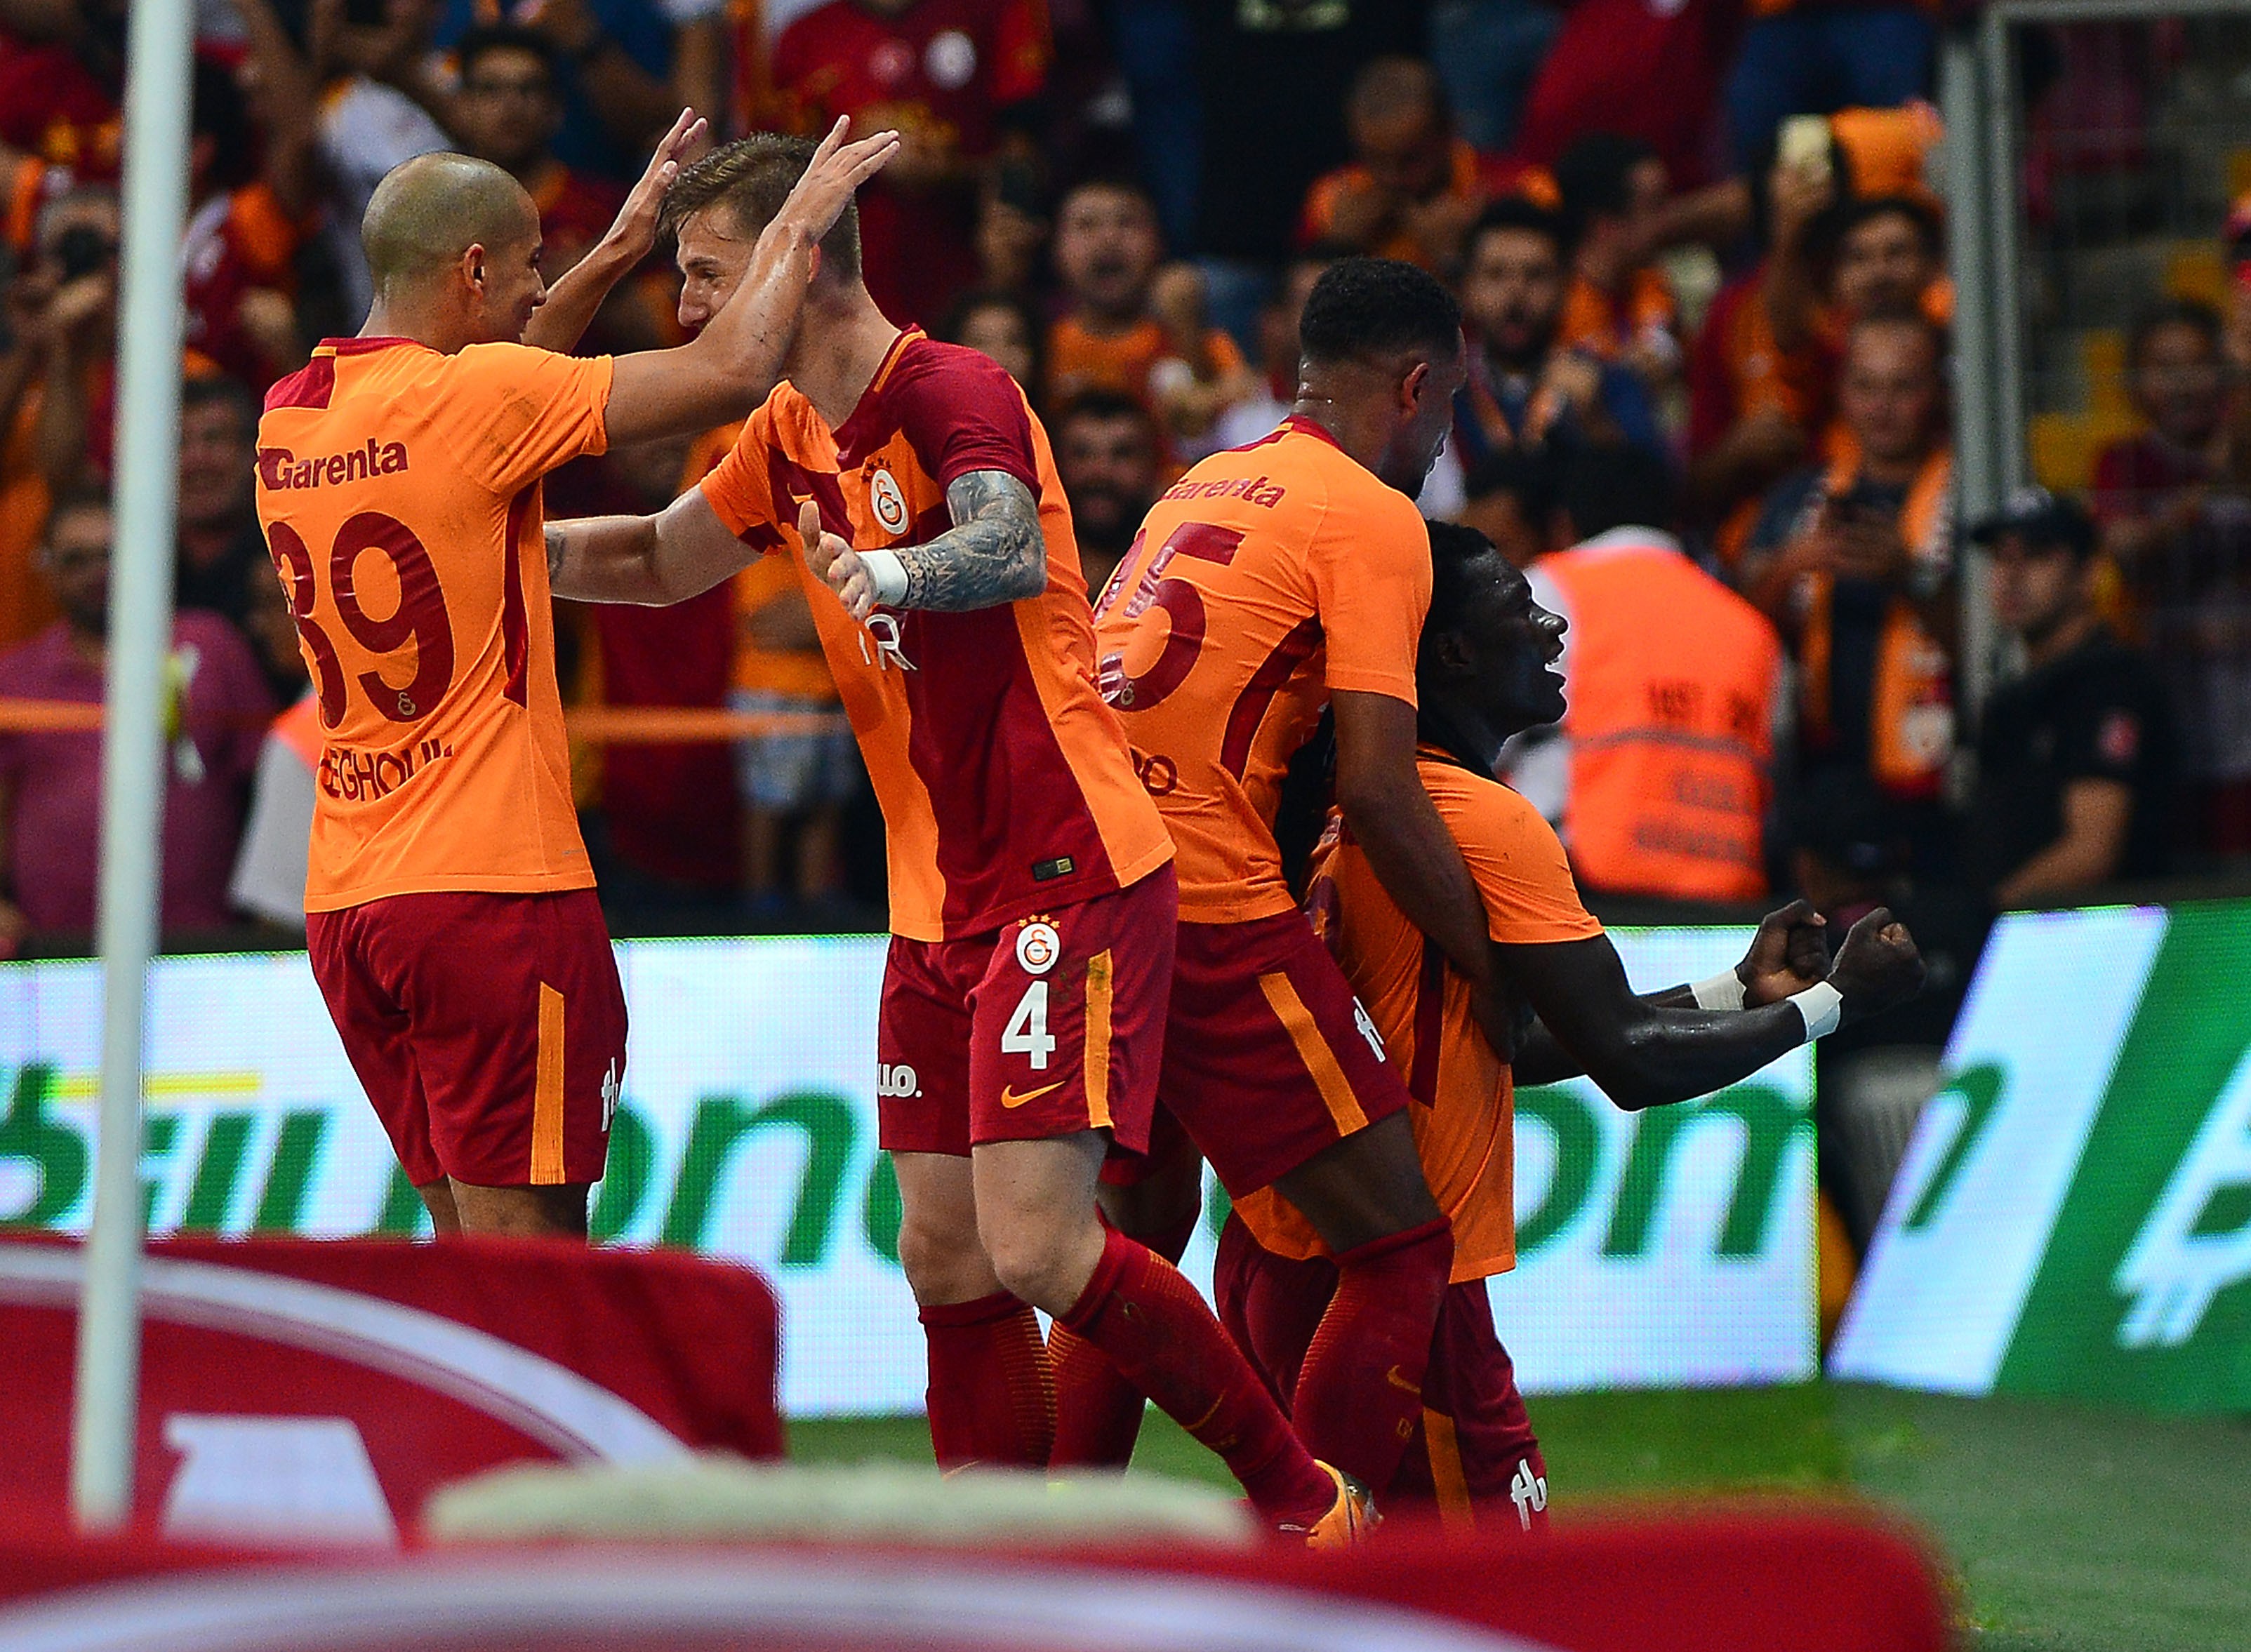 Özet | Galatasaray 4-2 Kasımpaşa | Hazırlık maçı - YouTube